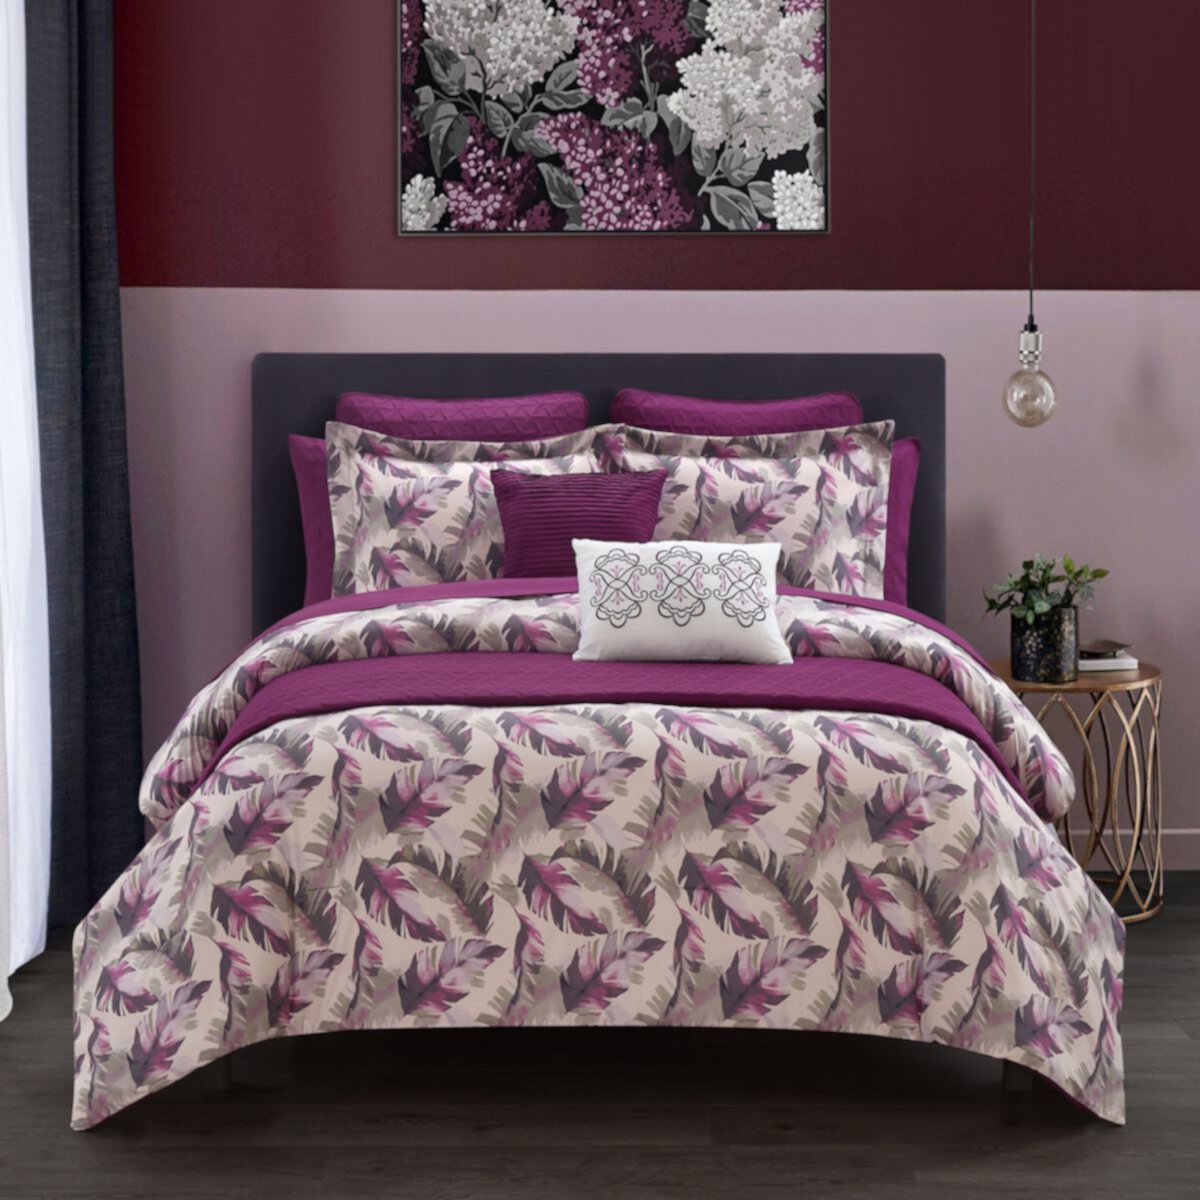 Комплект одеяла Chic Home Kala с цветочным принтом и подушками в тон Chic Home